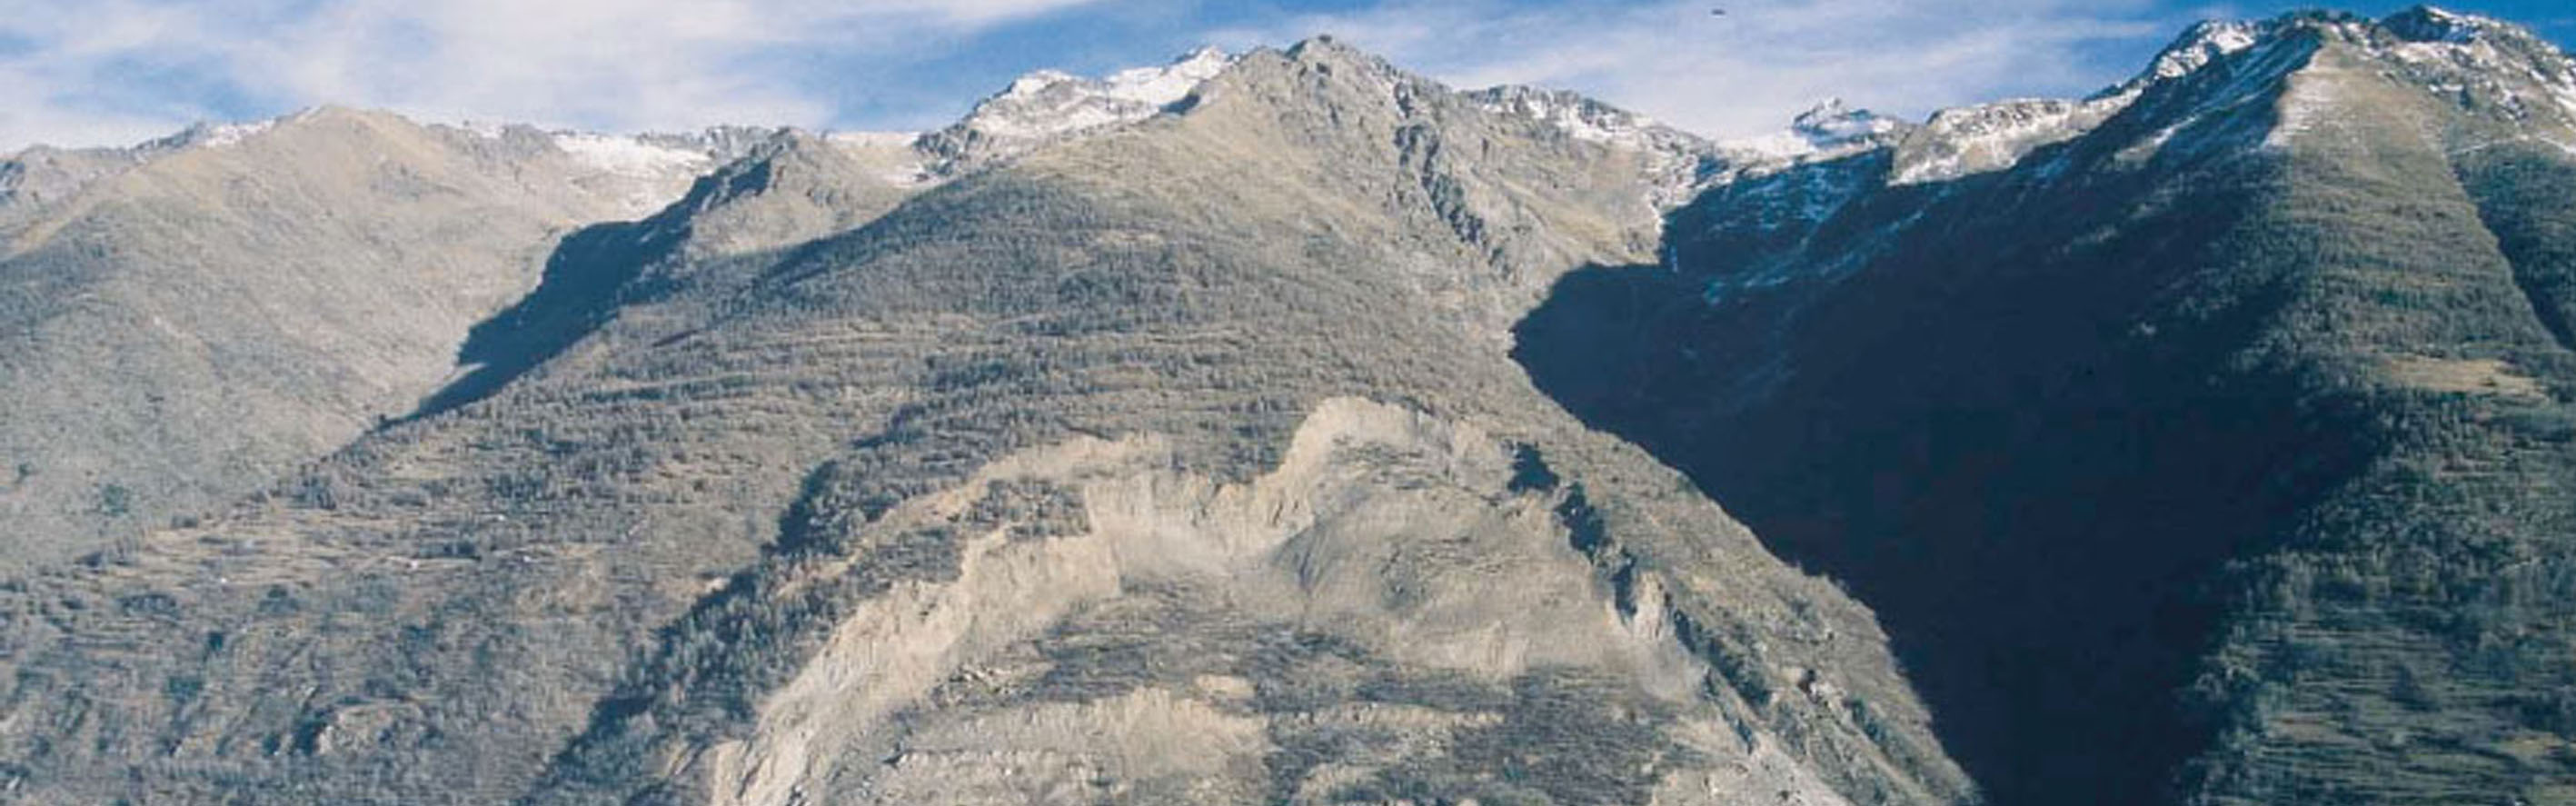 La Clapîère landslide: view of the unstable slope in 2003